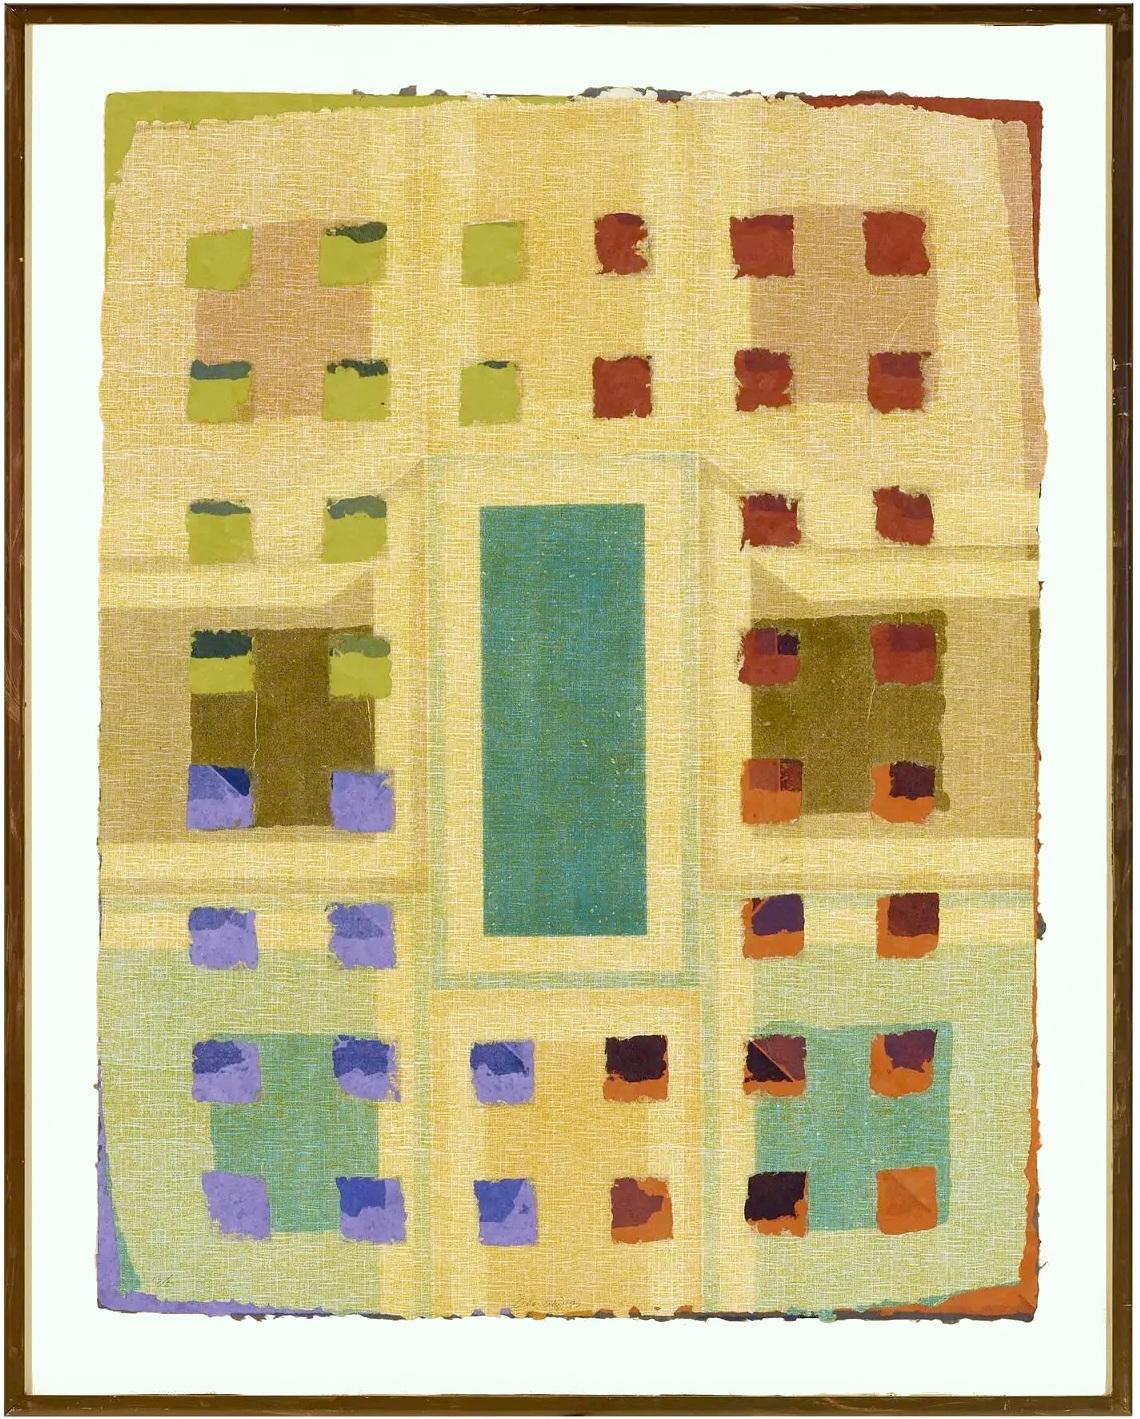 Abstract Print Alan Shields - collage d'abstraction géométrique en techniques mixtes sans titre